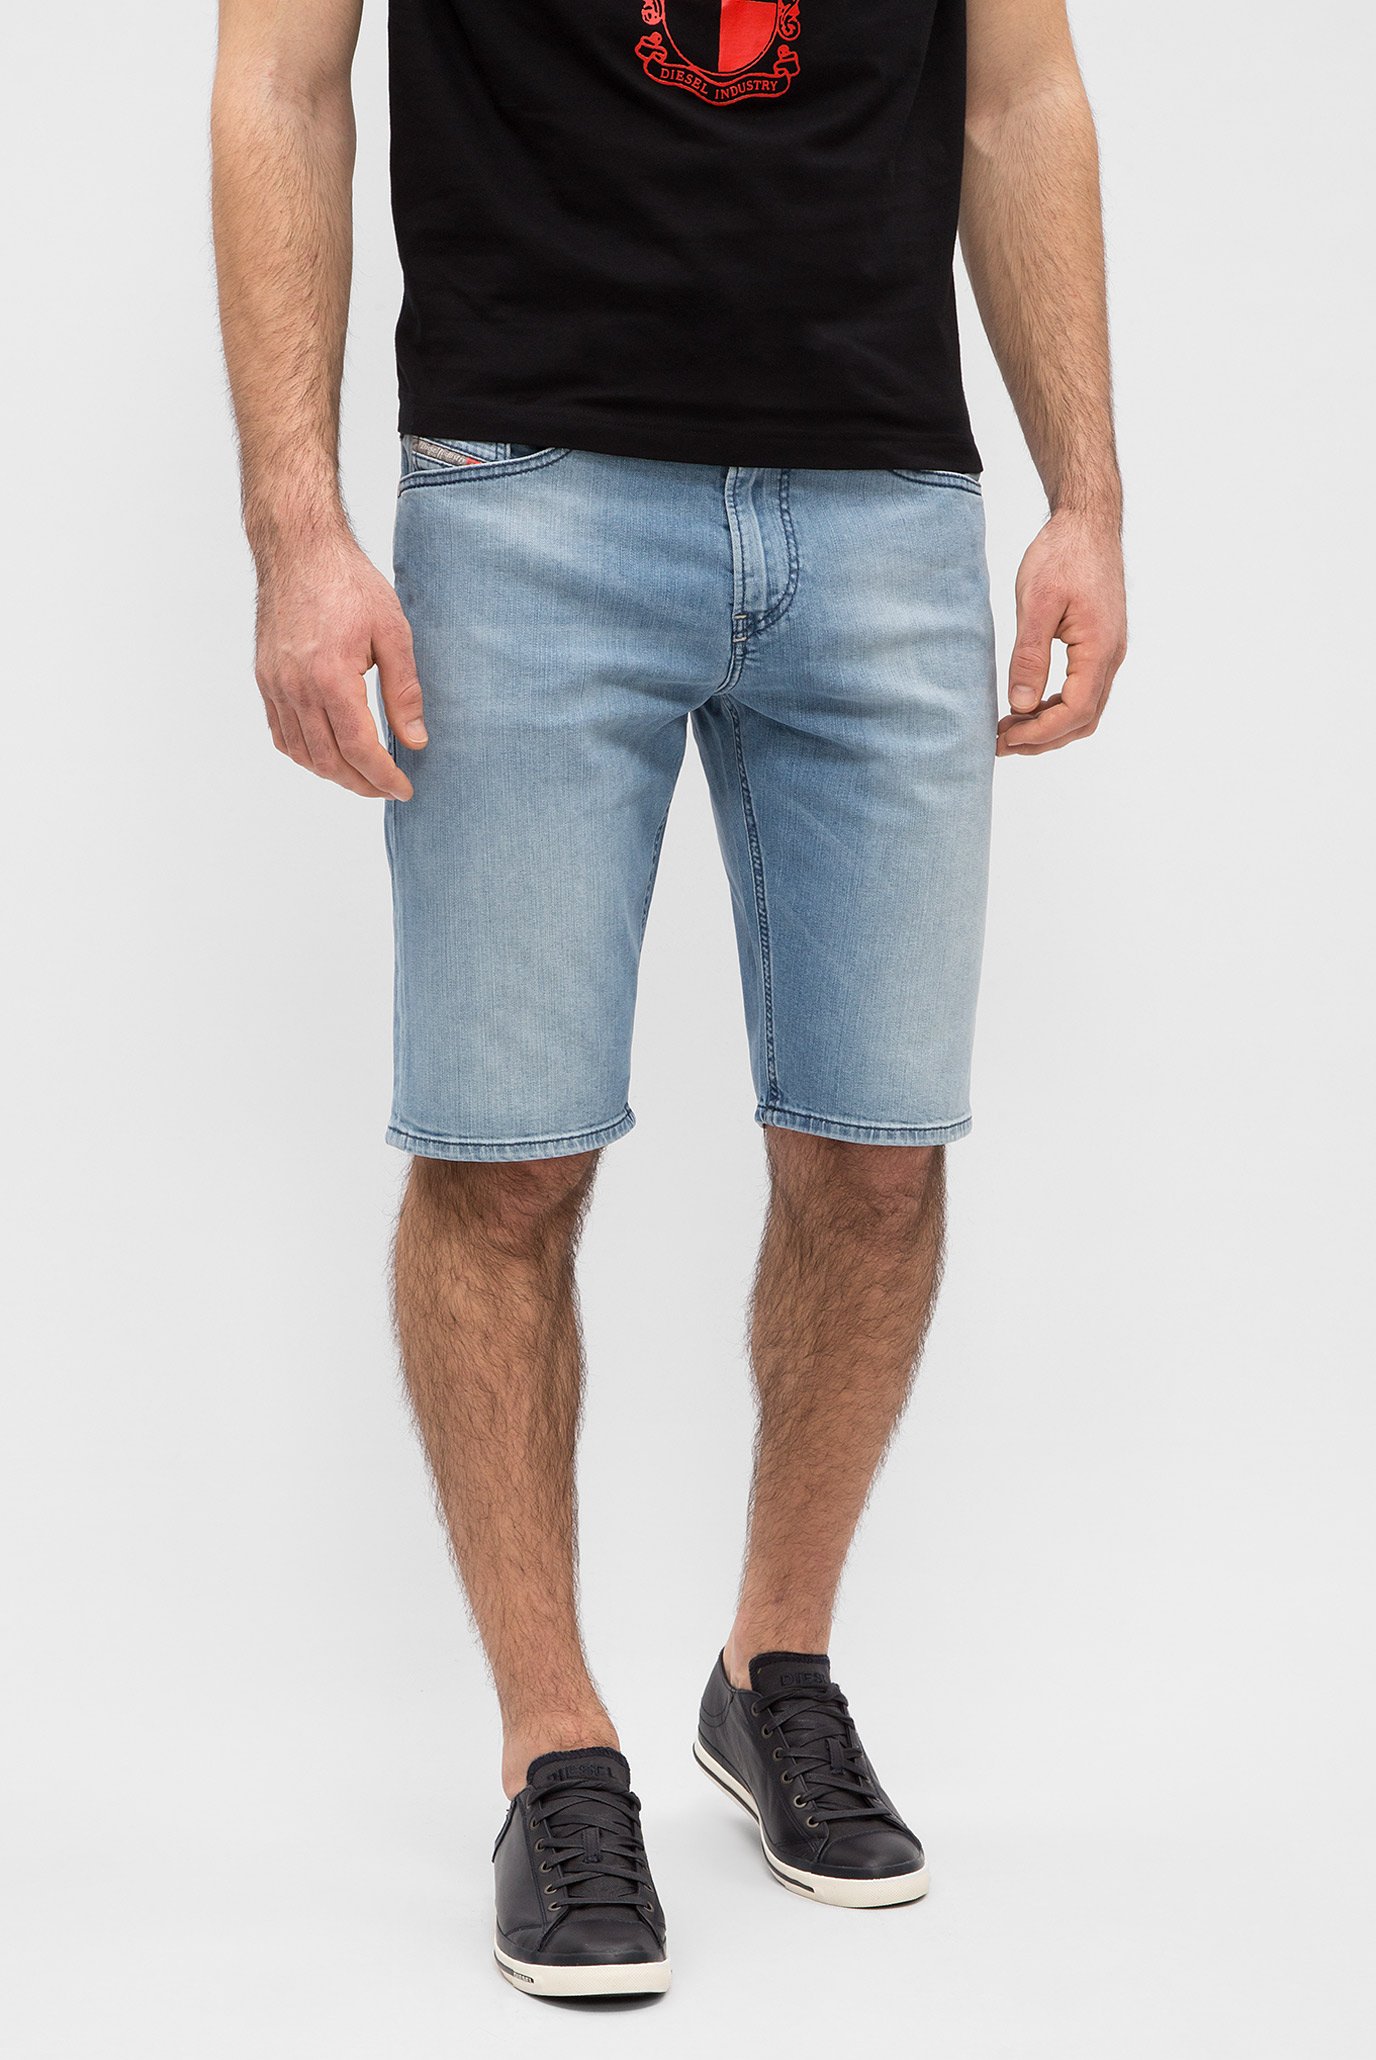 Мужские голубые джинсовые шорты THOSHORT CALZONCINI 1